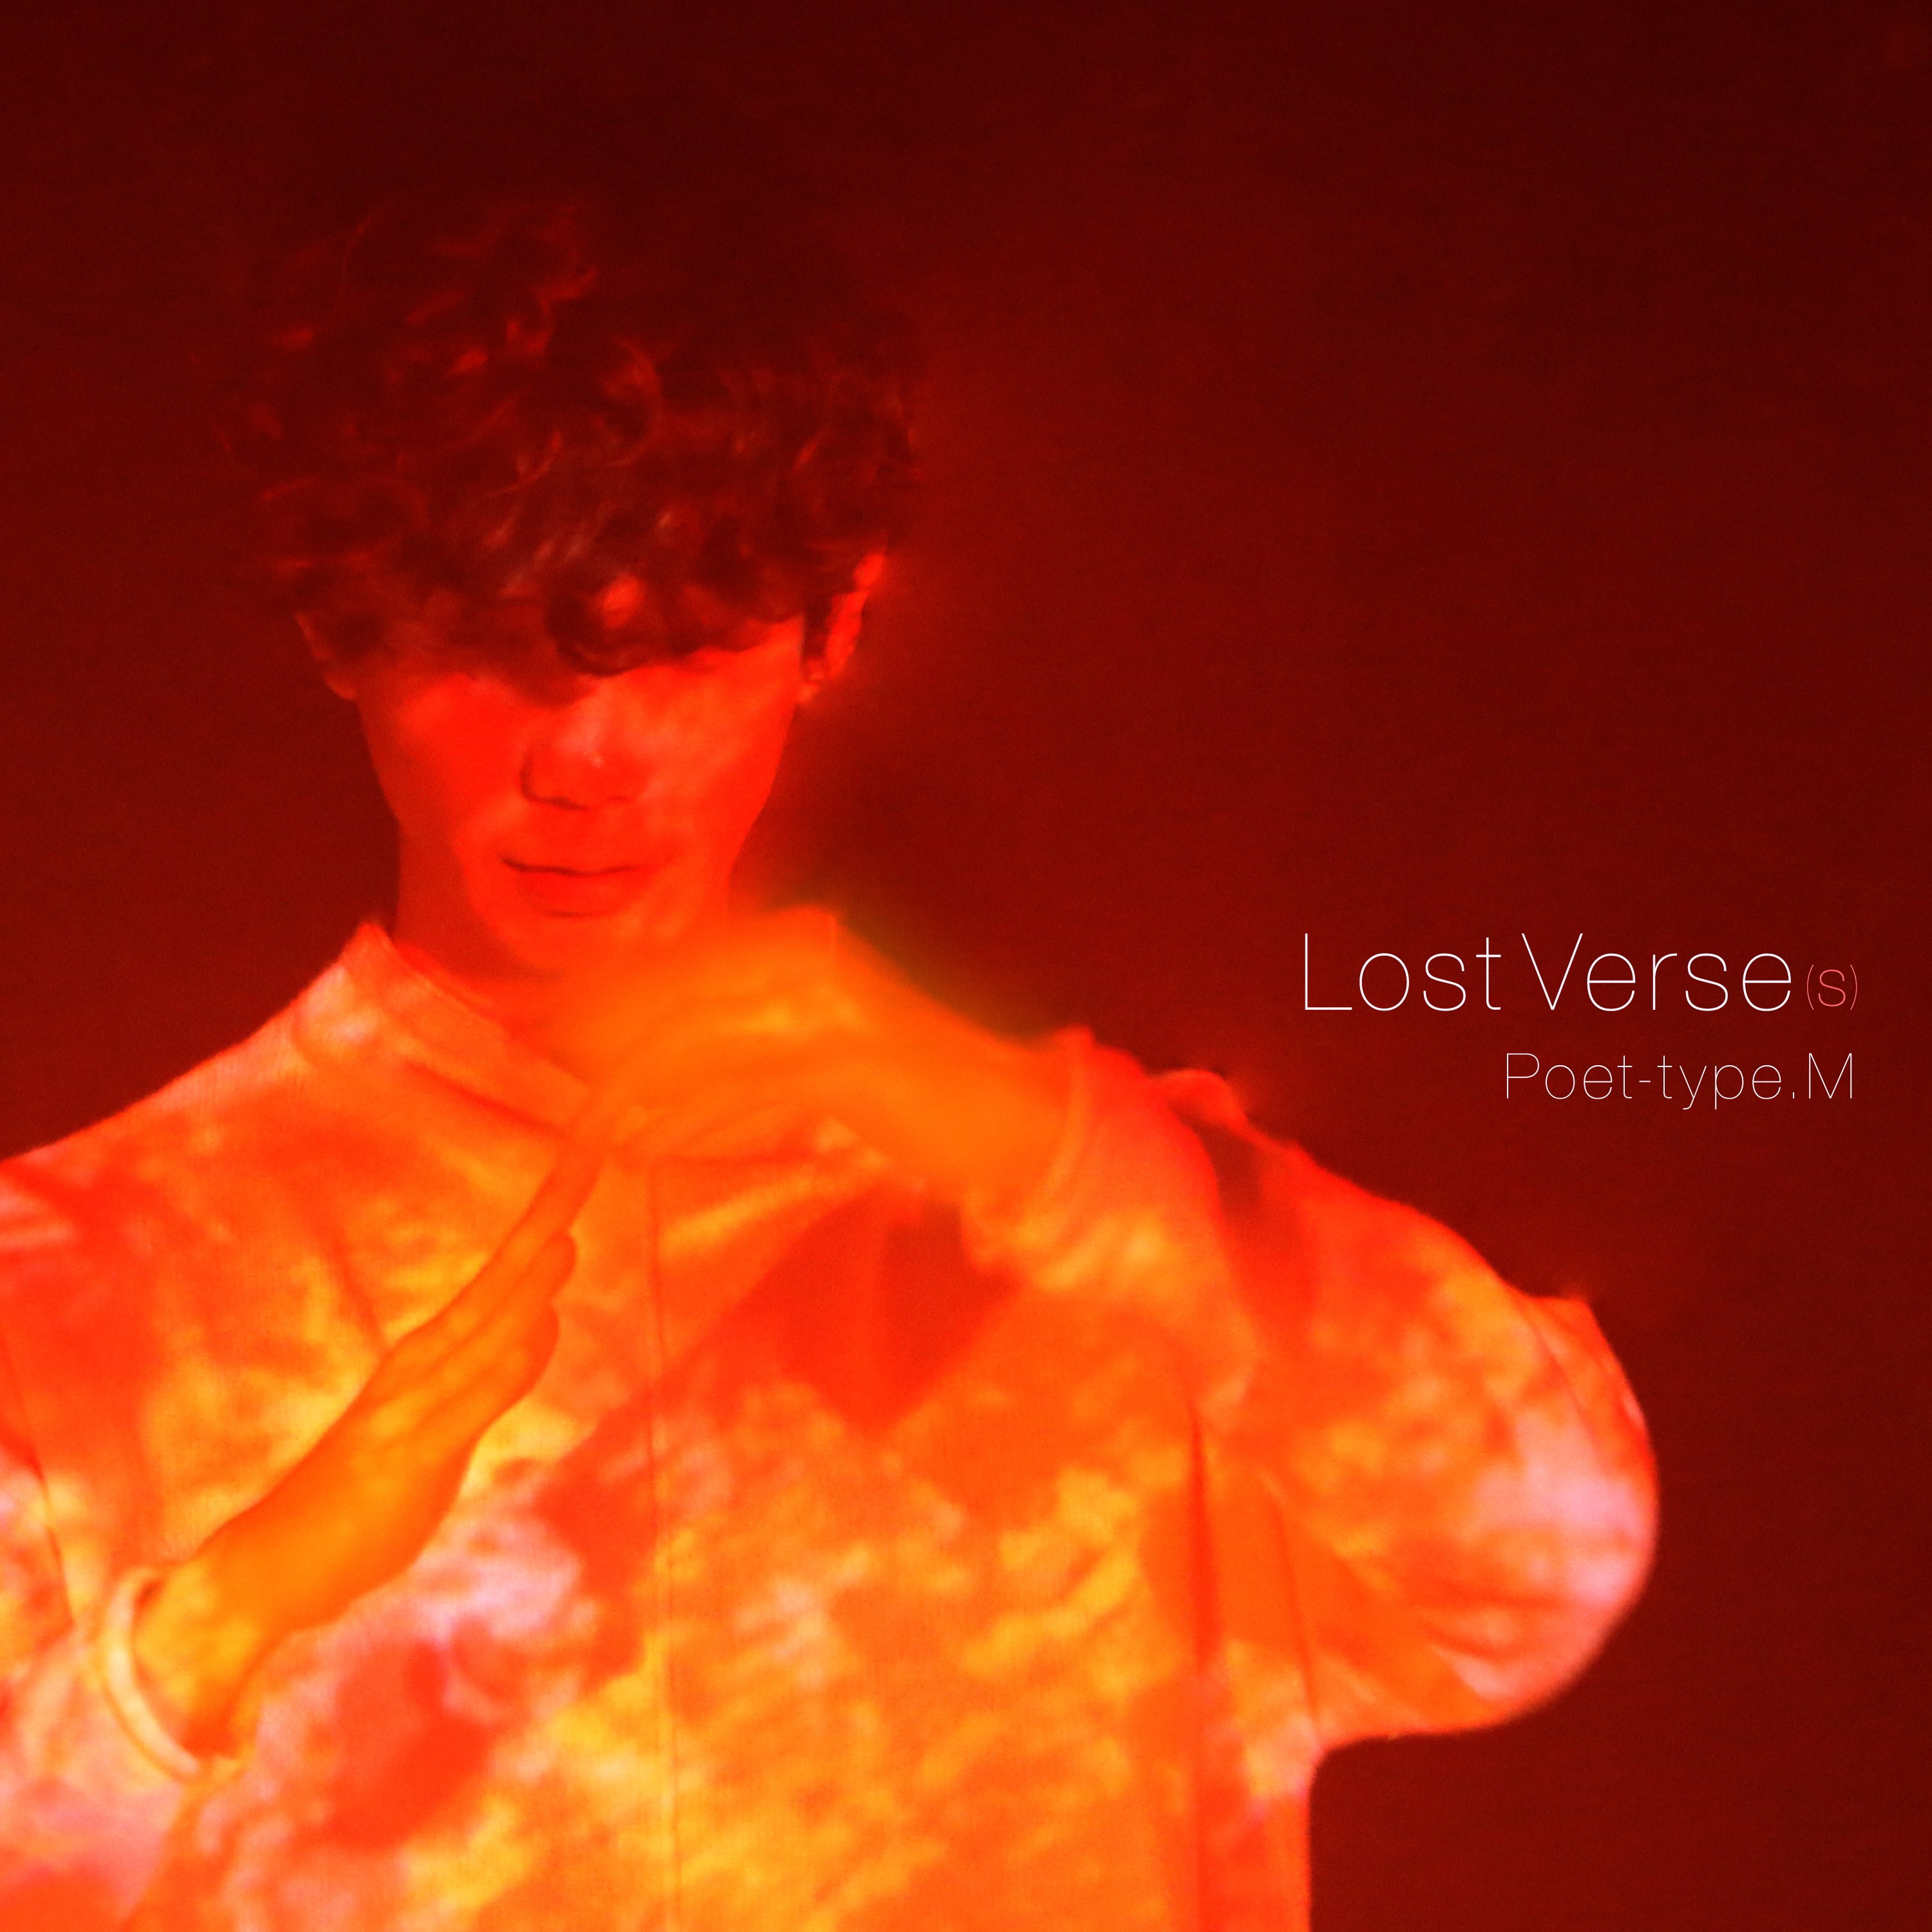 Lost Verse(s)